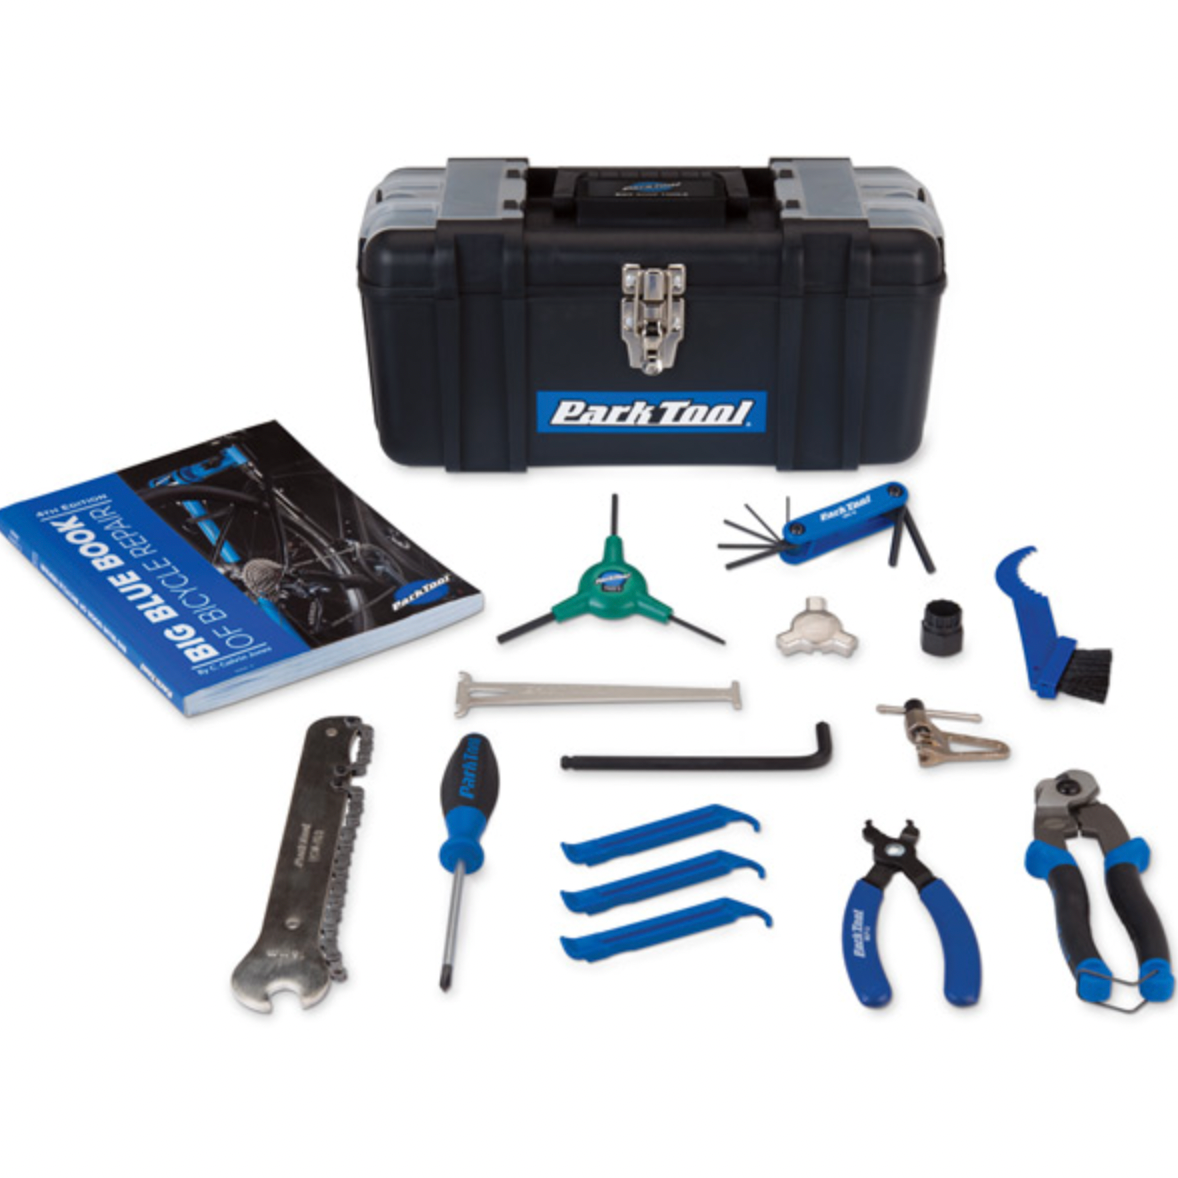 Park Tool SK-4 - Home Mechanic Starter Kit